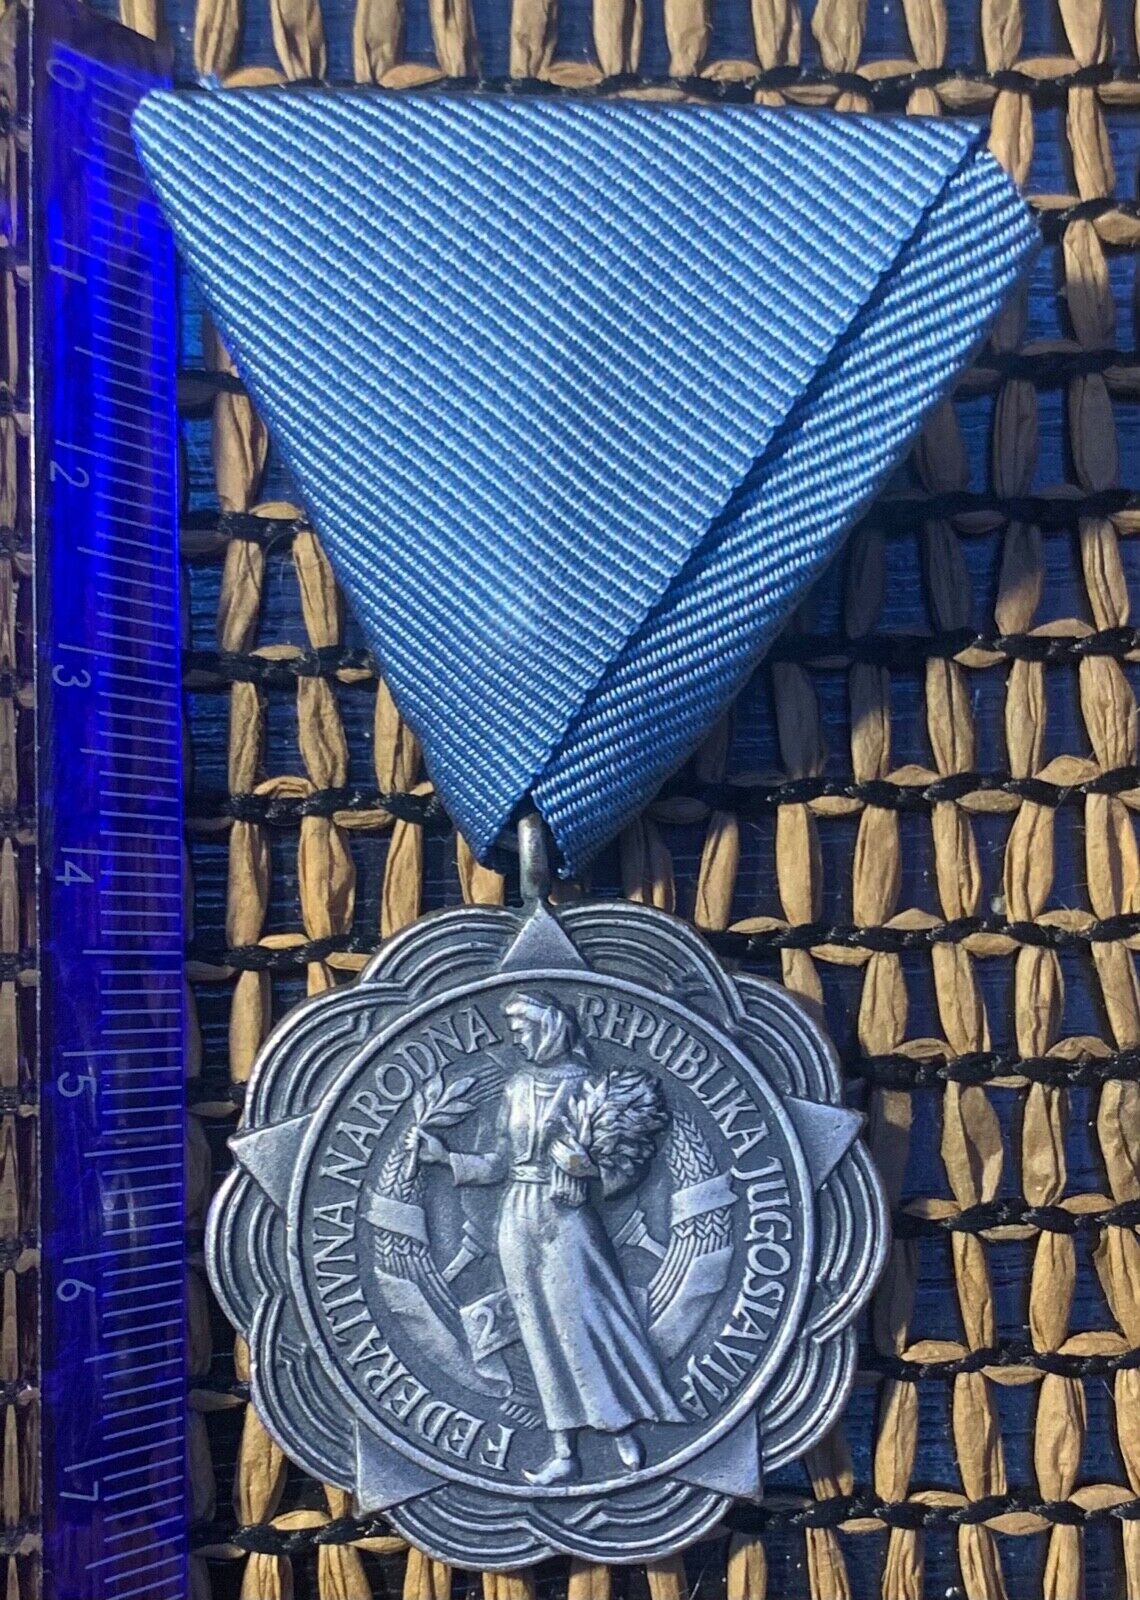 Yugoslav medal for merit FNRY Yugoslavia